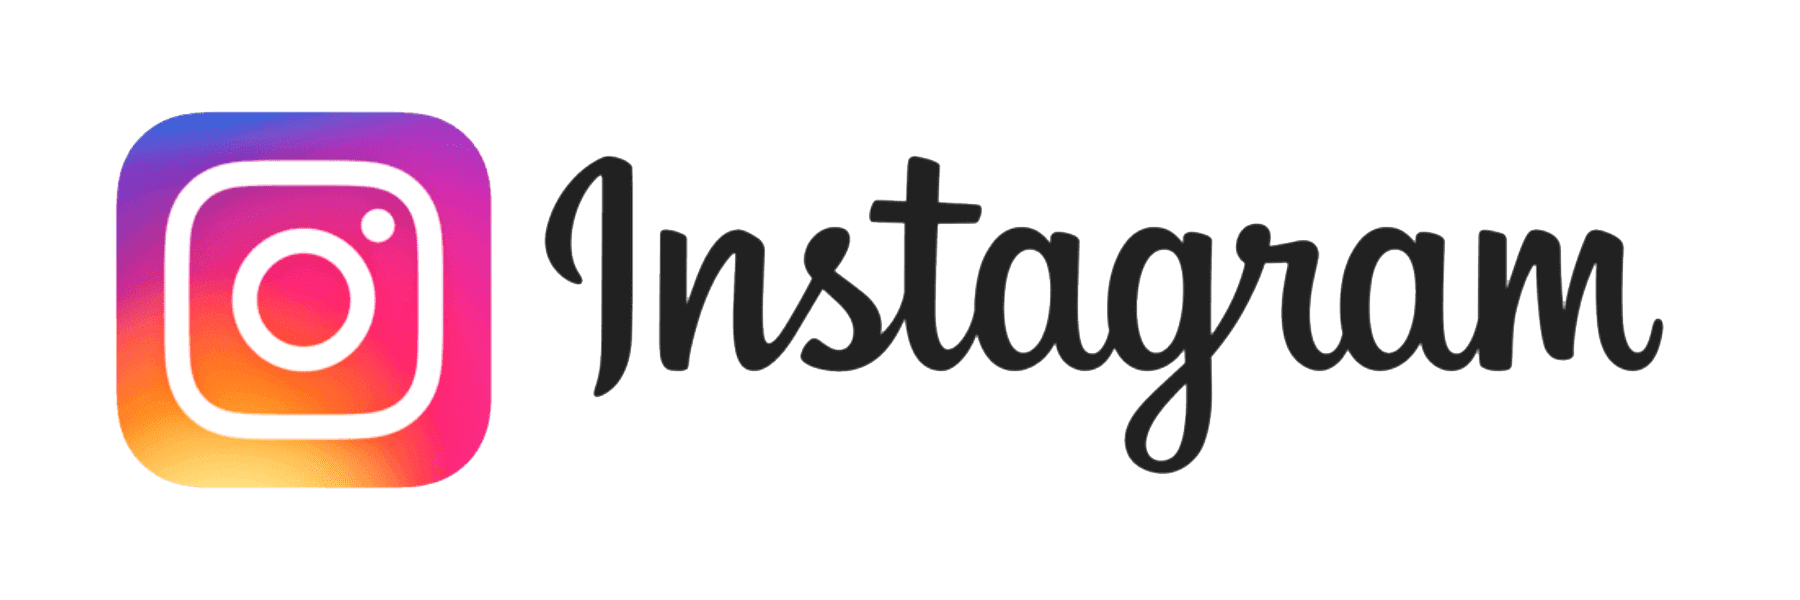 Logo de Instagram: la historia y el significado del logotipo, la marca y el  símbolo. | png, vector